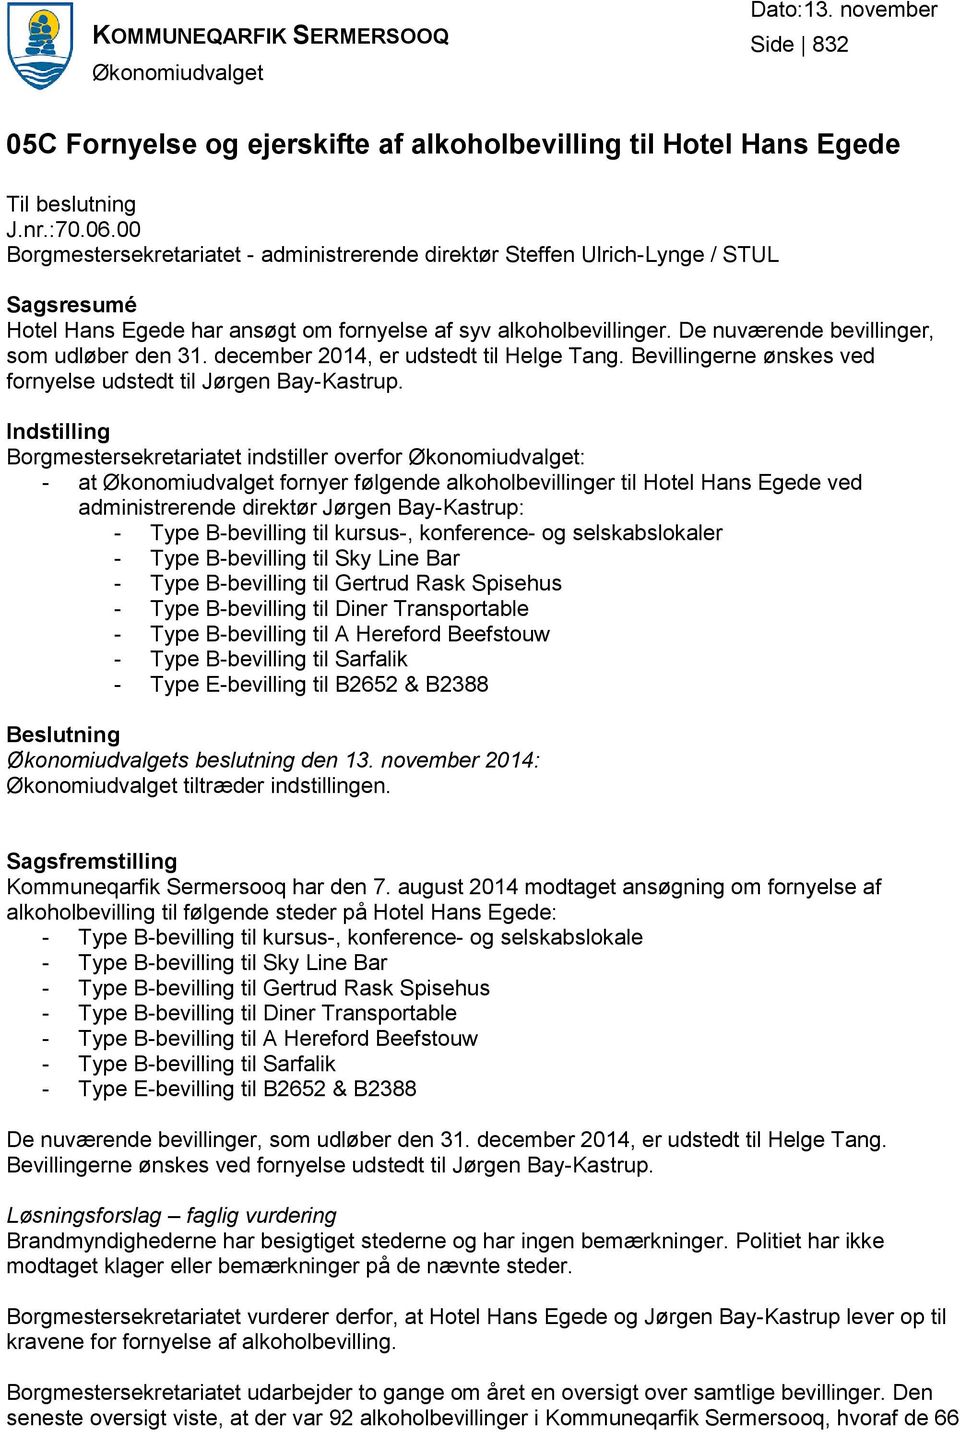 De nuværende bevillinger, som udløber den 31. december 2014, er udstedt til Helge Tang. Bevillingerne ønskes ved fornyelse udstedt til Jørgen Bay-Kastrup.